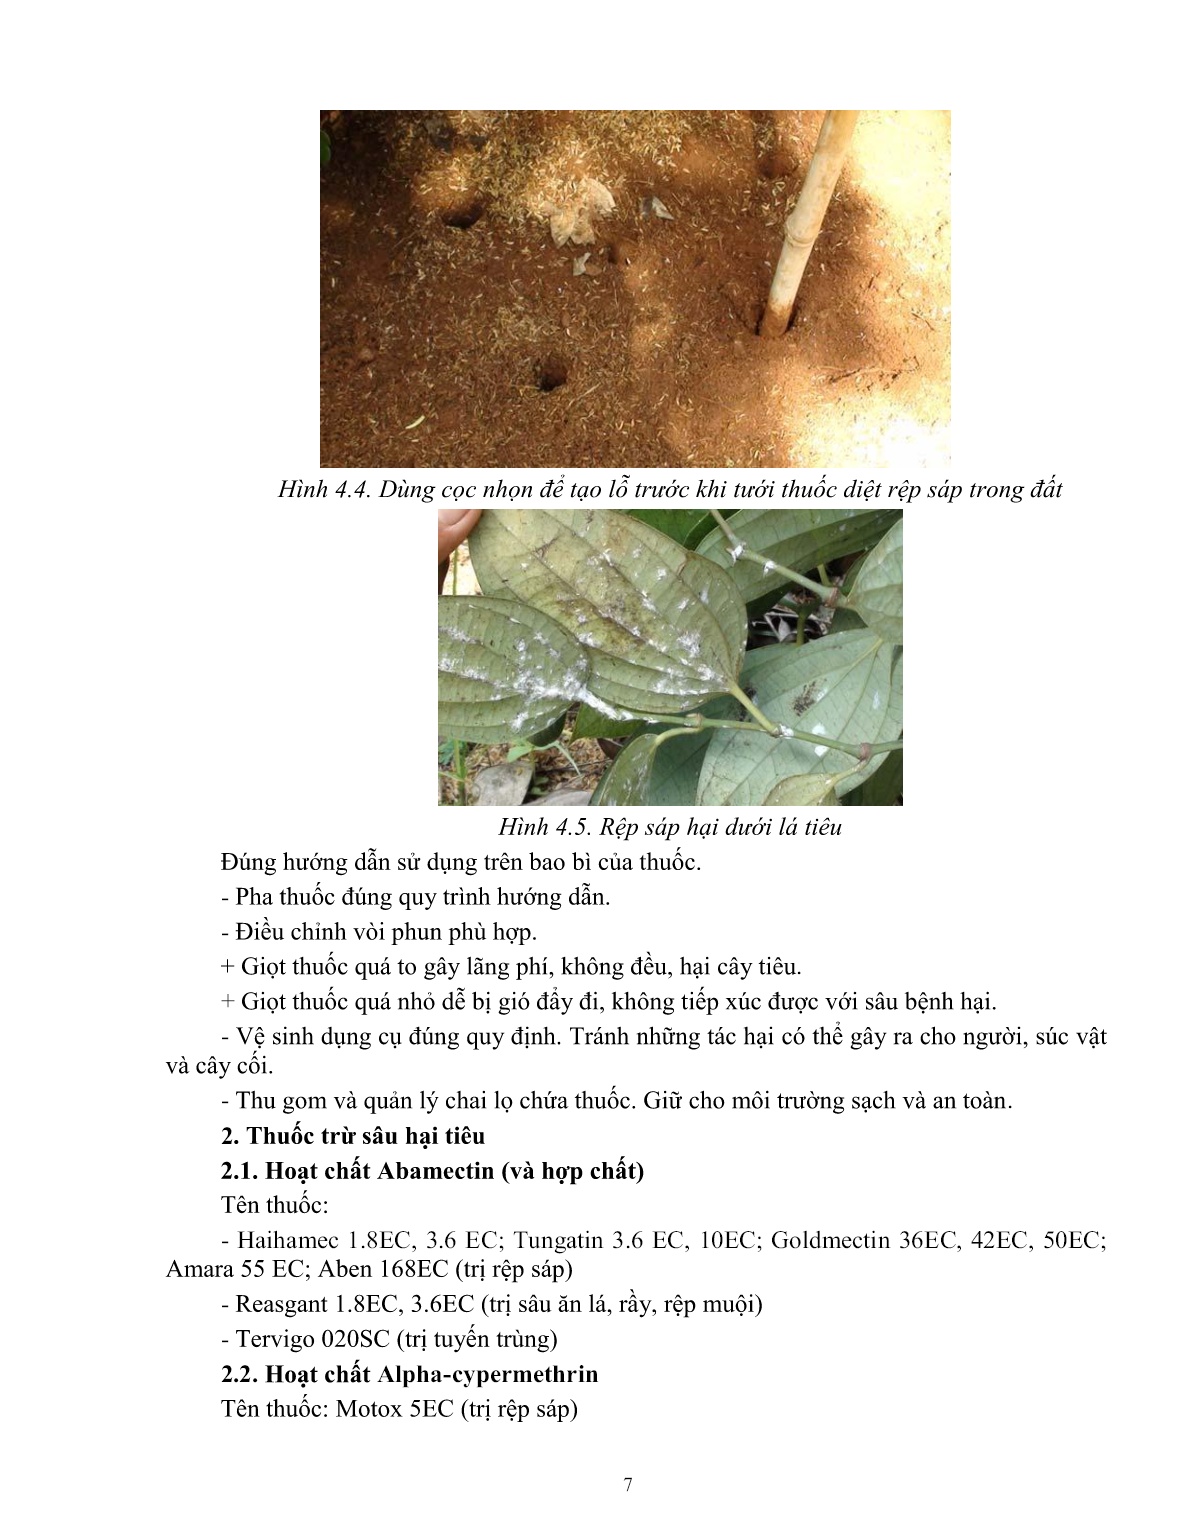 Giáo trình mô đun Bảo vệ thực vật trên cây tiêu (Trình độ: Đào tạo dưới 3 tháng) trang 7